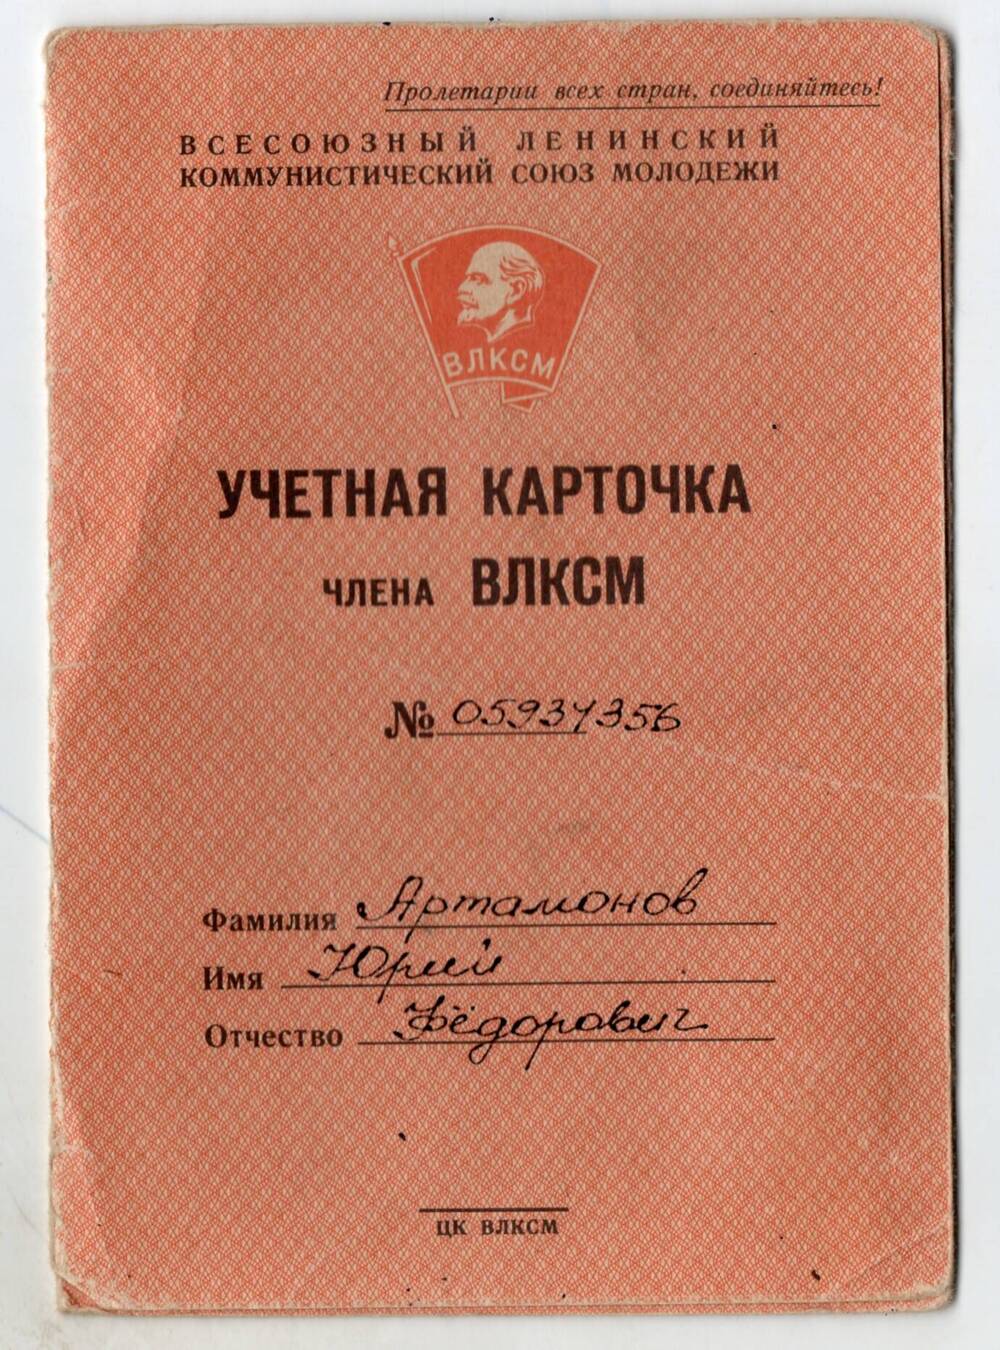 Учетная карточка члена ВЛКСМ № 65934356 Артамонову Ю. Ф.